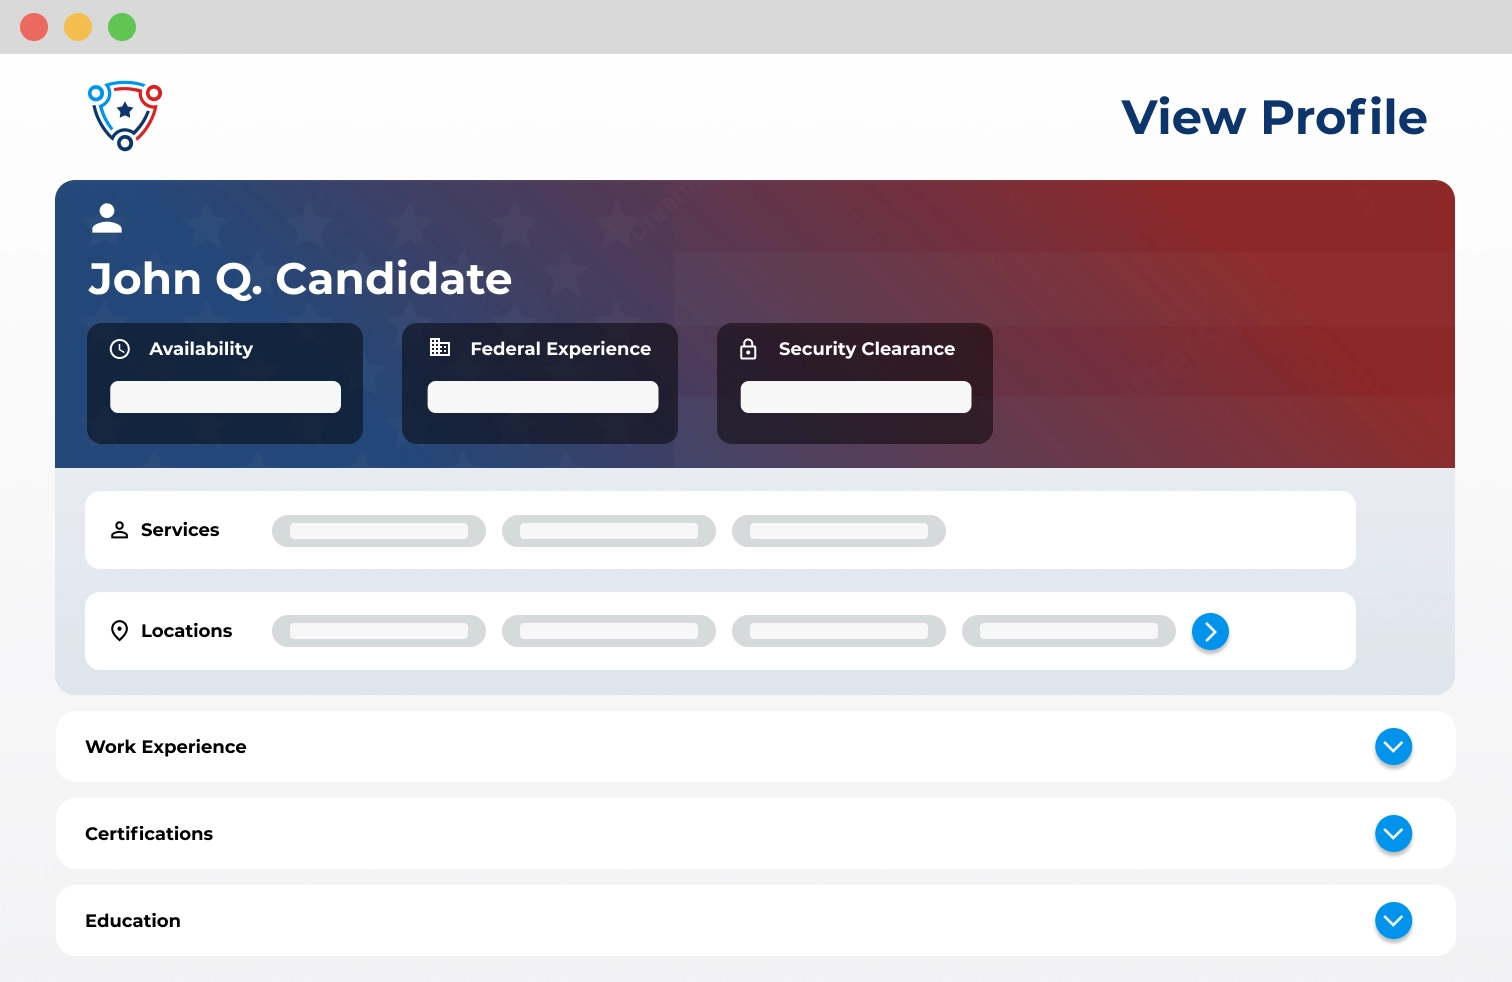 Image: Candidate profile illustration